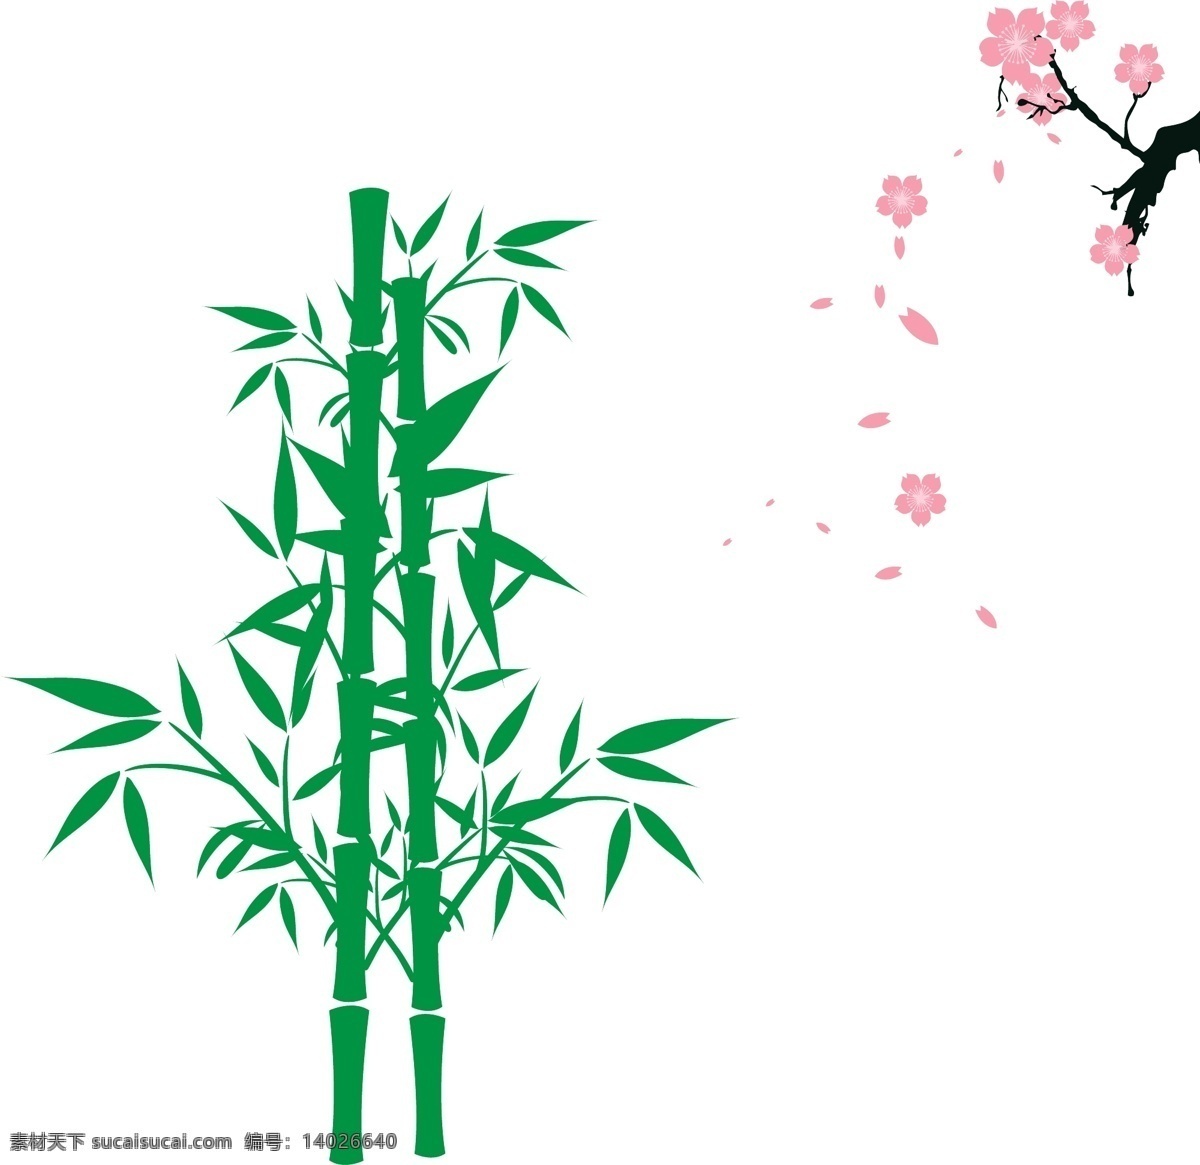 日本旅游 竹子 樱花 日式风 日本风情 植物 花瓣 自然景观 自然风光